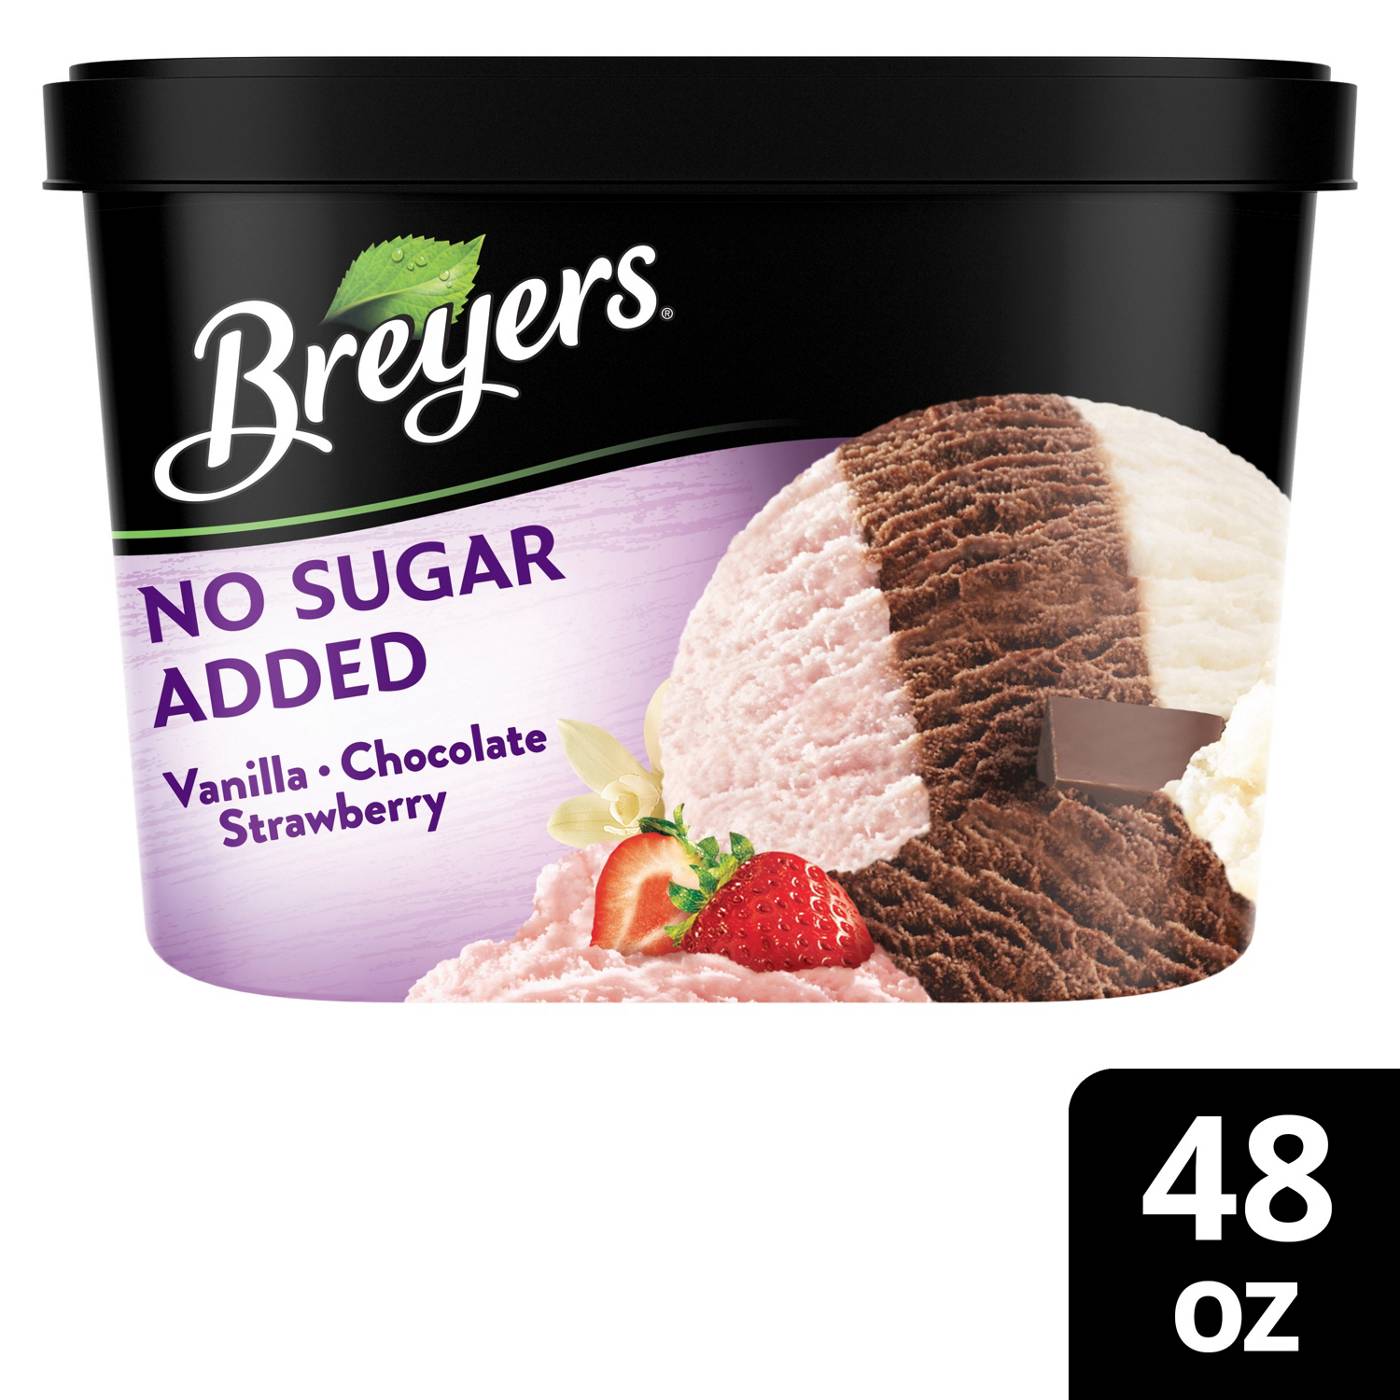 Breyers No Sugar Added Vanilla Chocolate Strawberry Frozen Dairy Dessert; image 3 of 4